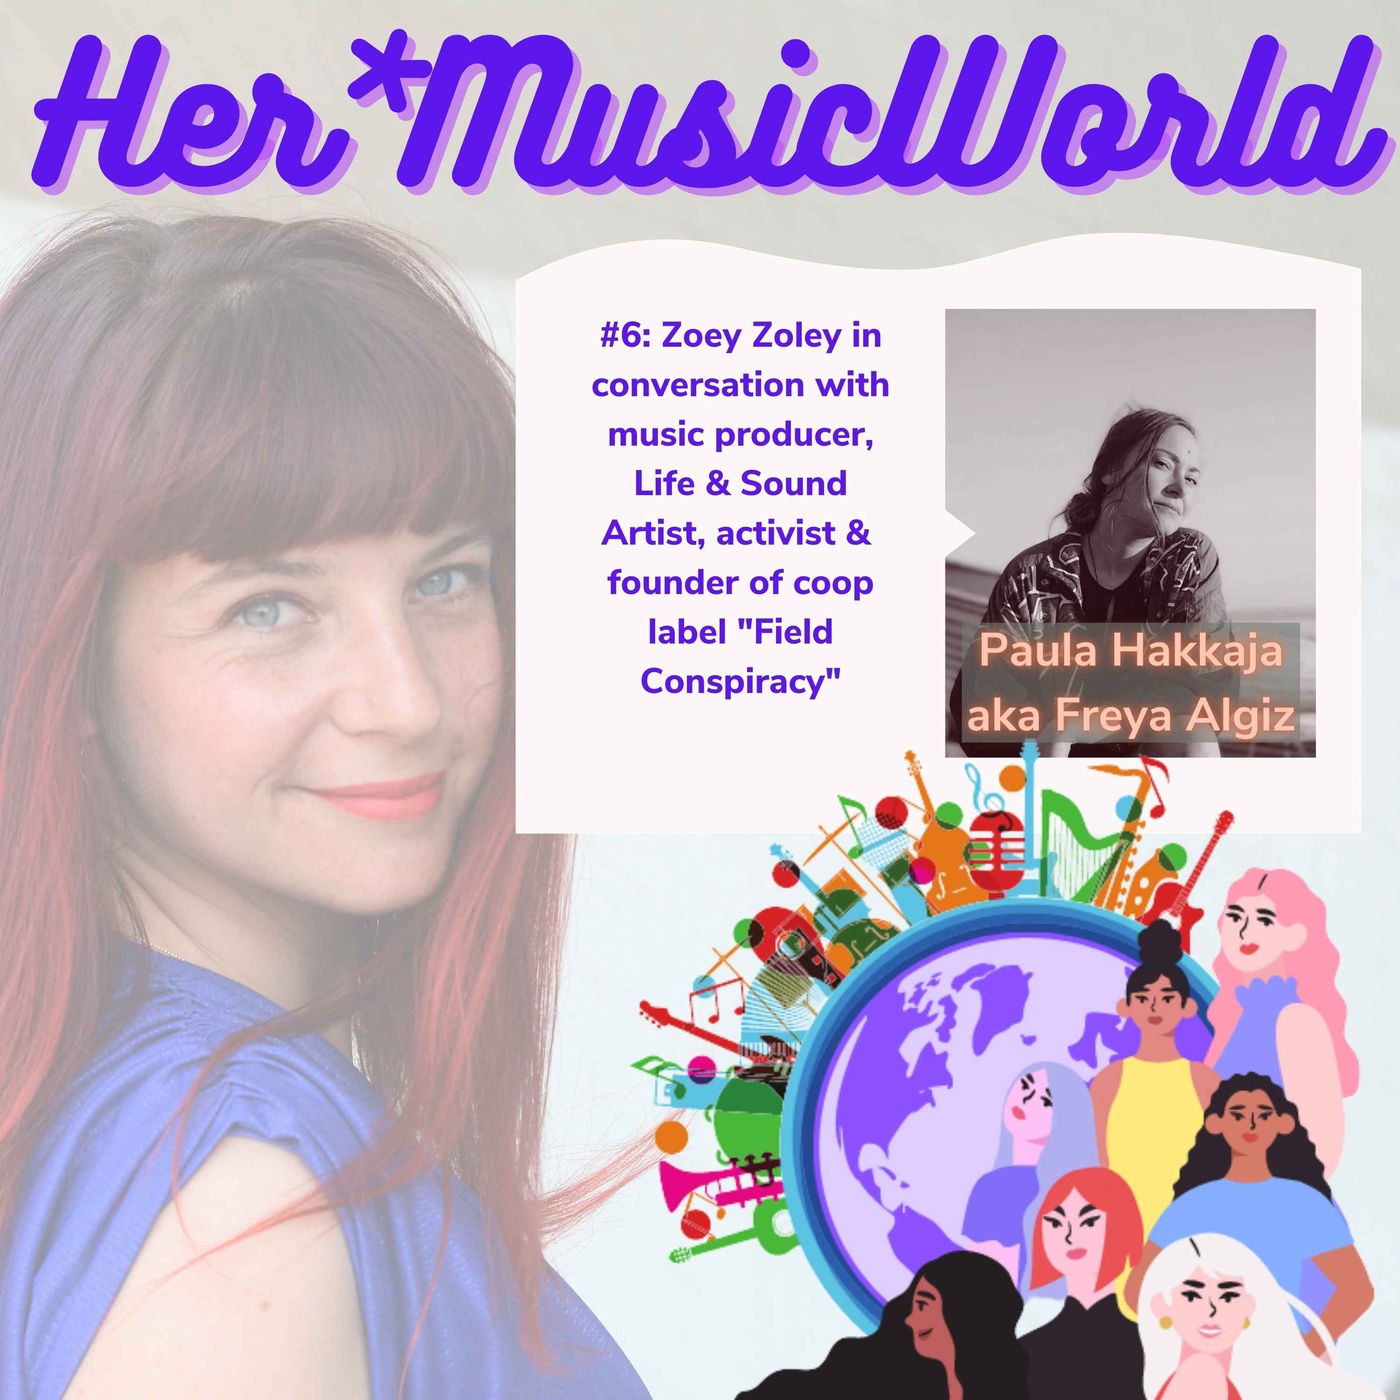 #6 HerMusicWorld Podcast with Paula Hakkaja aka Freya Algiz